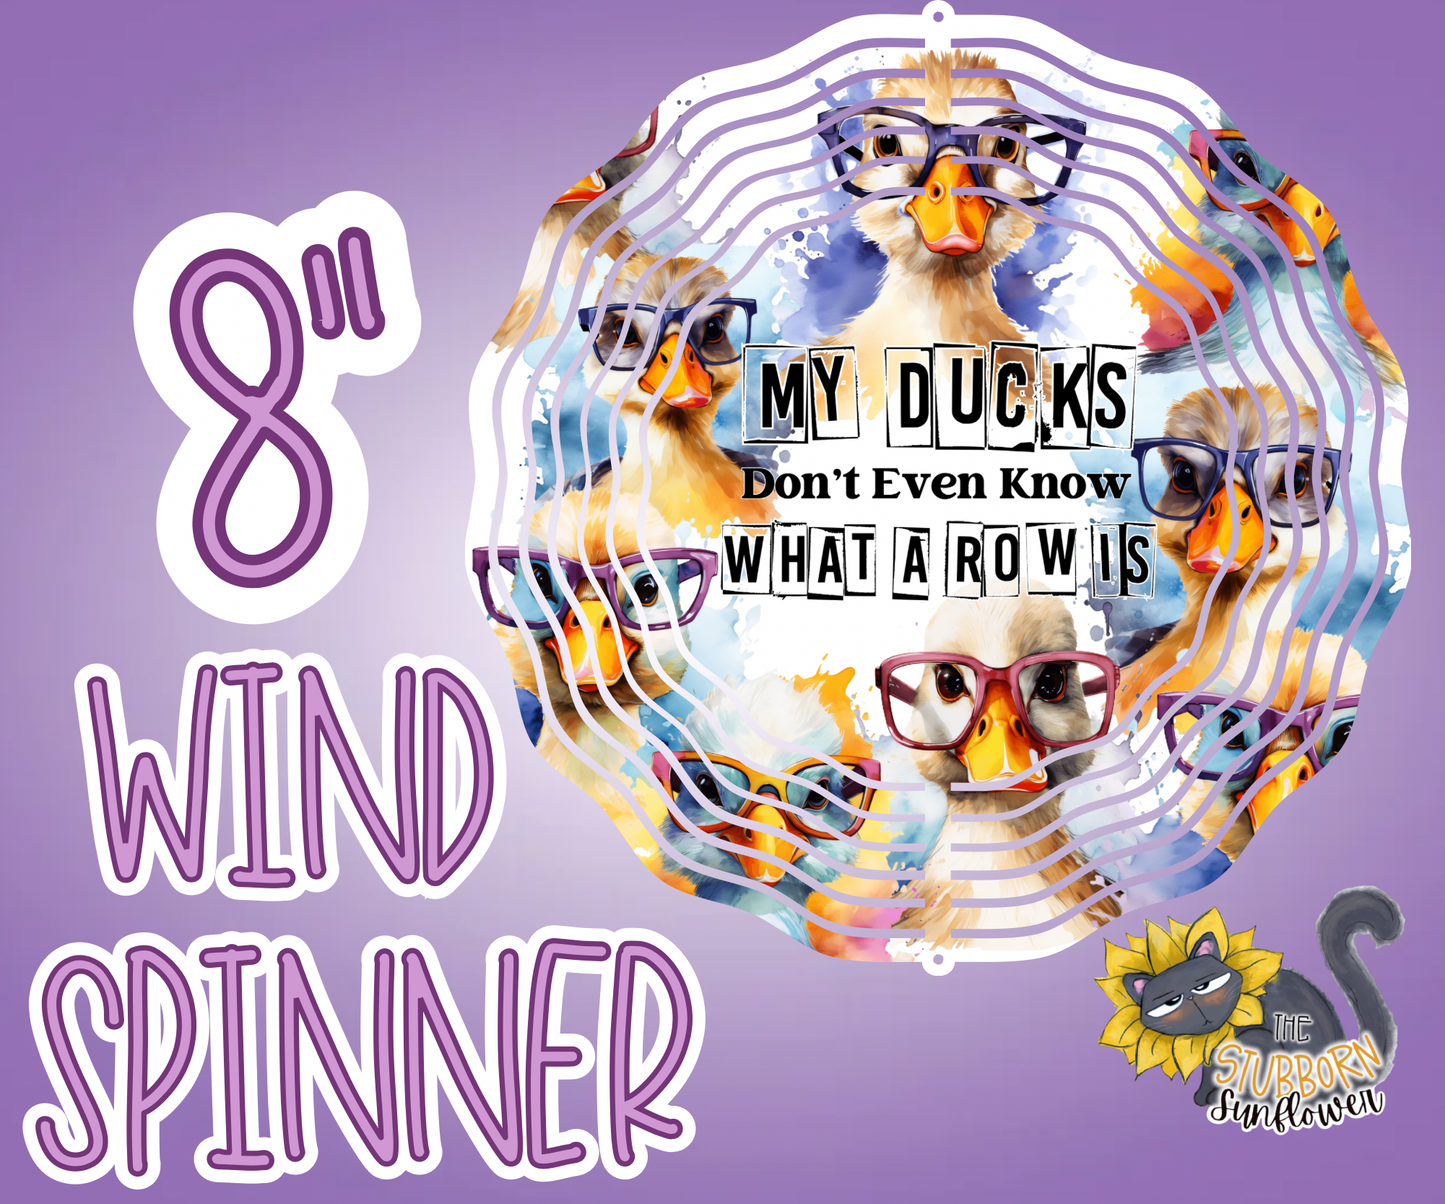 My Ducks 8” Wind Spinner